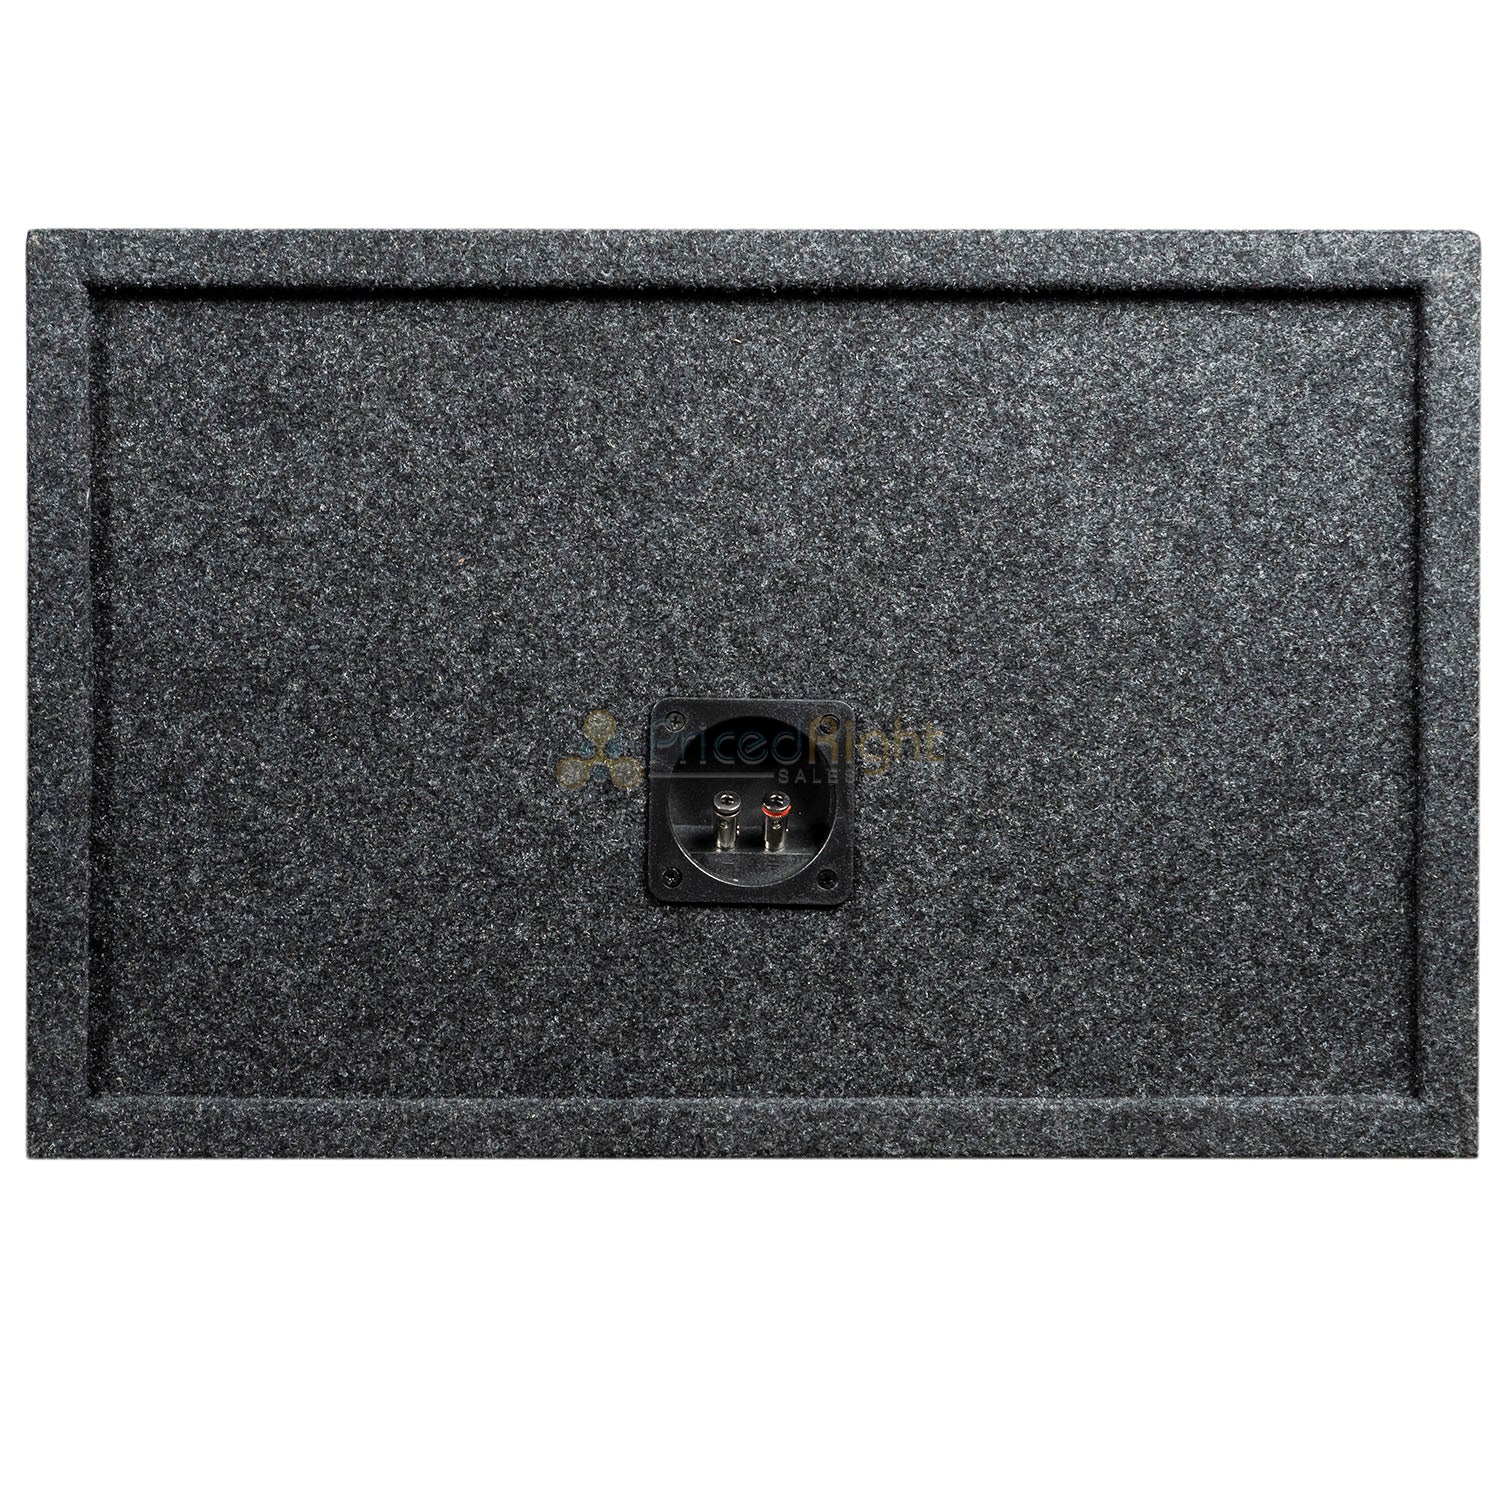 Dual 10" Ported Subwoofer Box Enclosure 3/4" MDF Vented Sub Box RI Audio Carpet